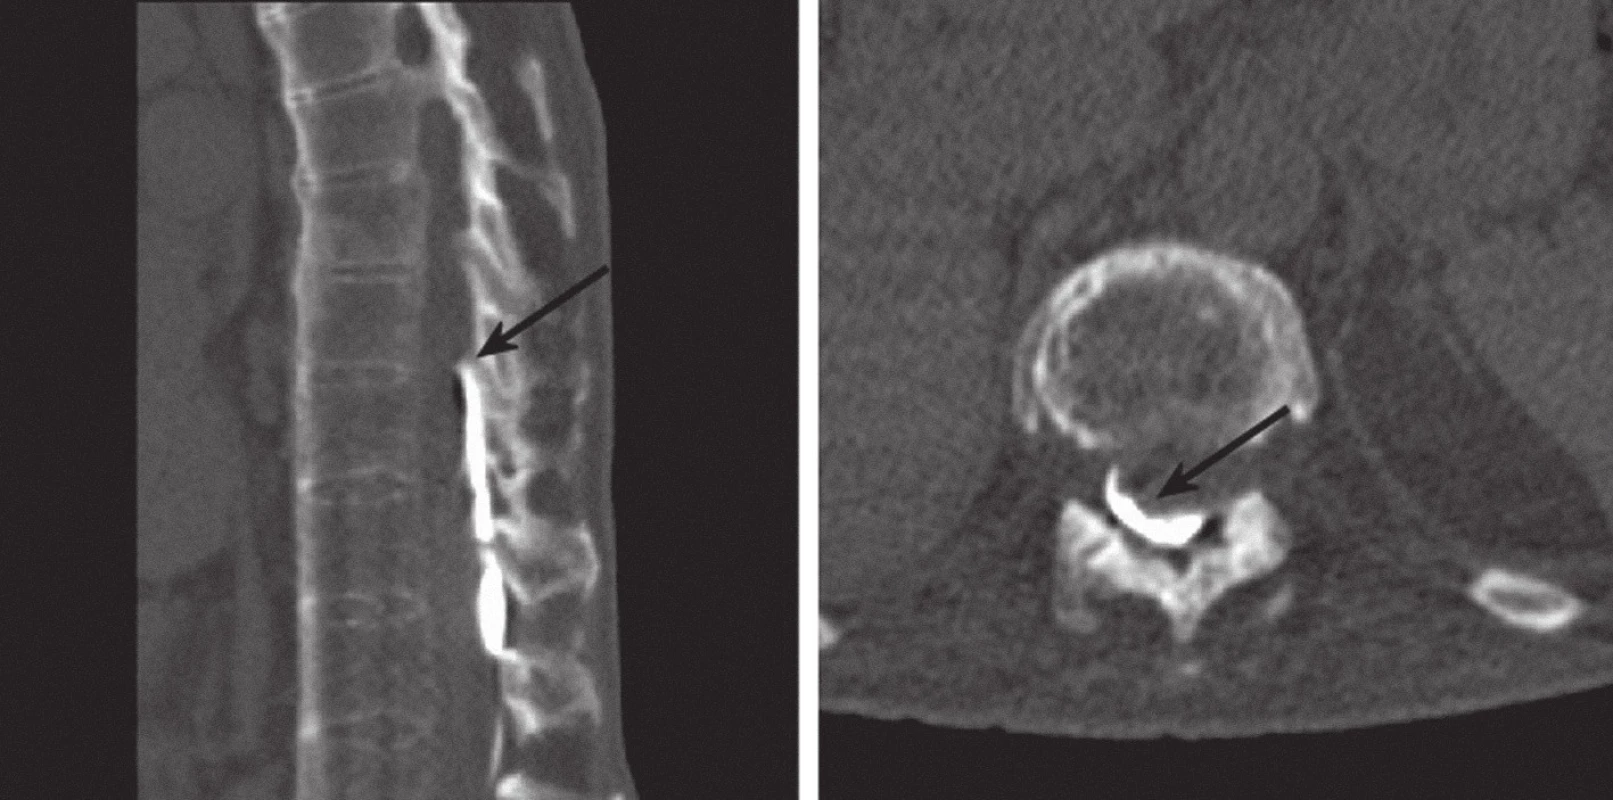 Myelo- CT: nativní CT po aplikaci 4 ml Iomeronu bočním portem do baklofenové pumpy. Katétr probíhá v epidurálním prostoru, hrot je při horním okraji Th 11, kontrastní látka je patrna dorzálně v epidurálním prostoru (označené šipkami). Sagitální řez po CT rekonstrukci (vlevo) a příčný řez (vpravo).